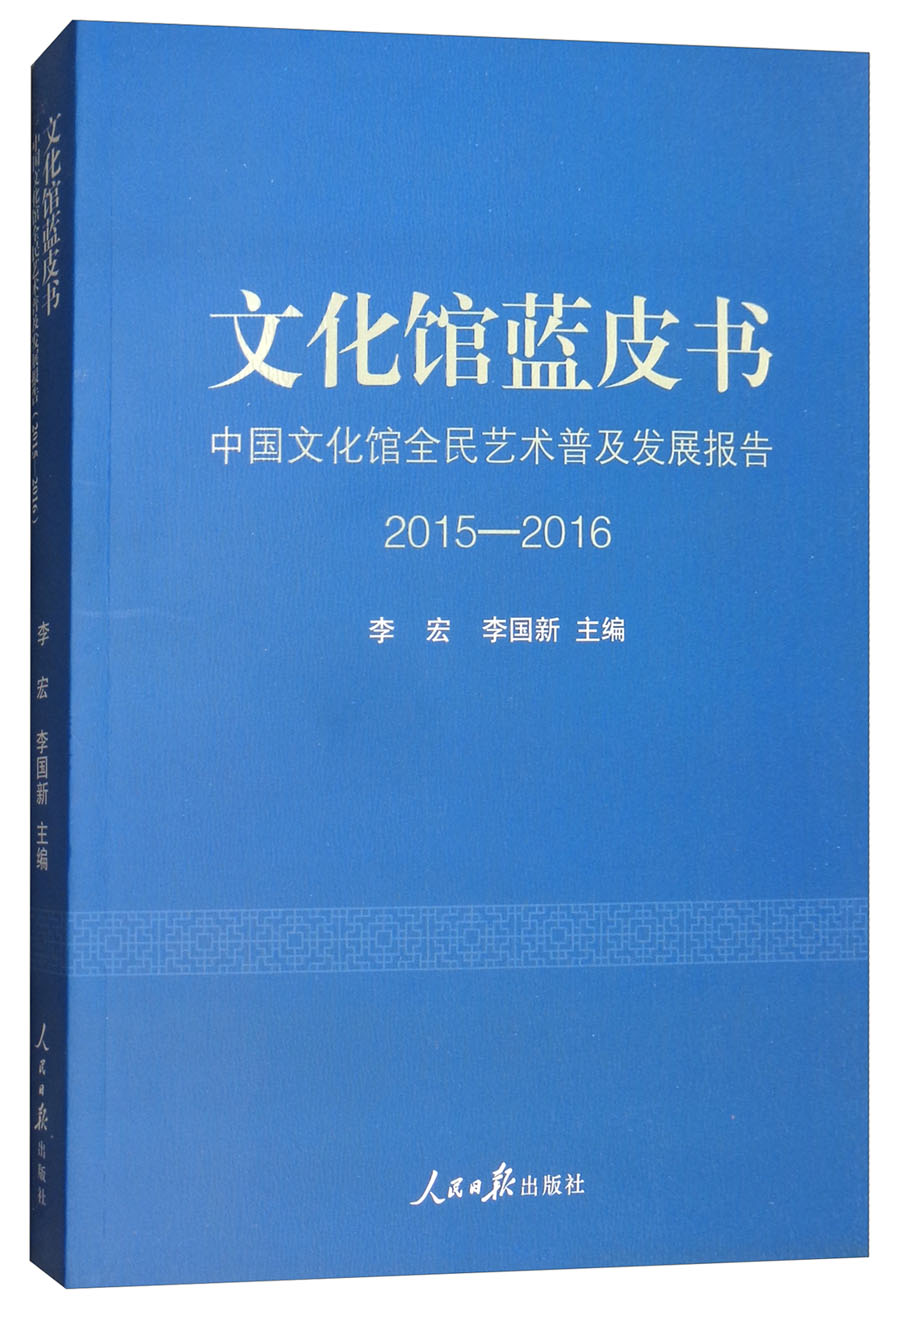 文化馆蓝皮书：中国文化馆全民艺术普及发展报告2015-2016 epub格式下载